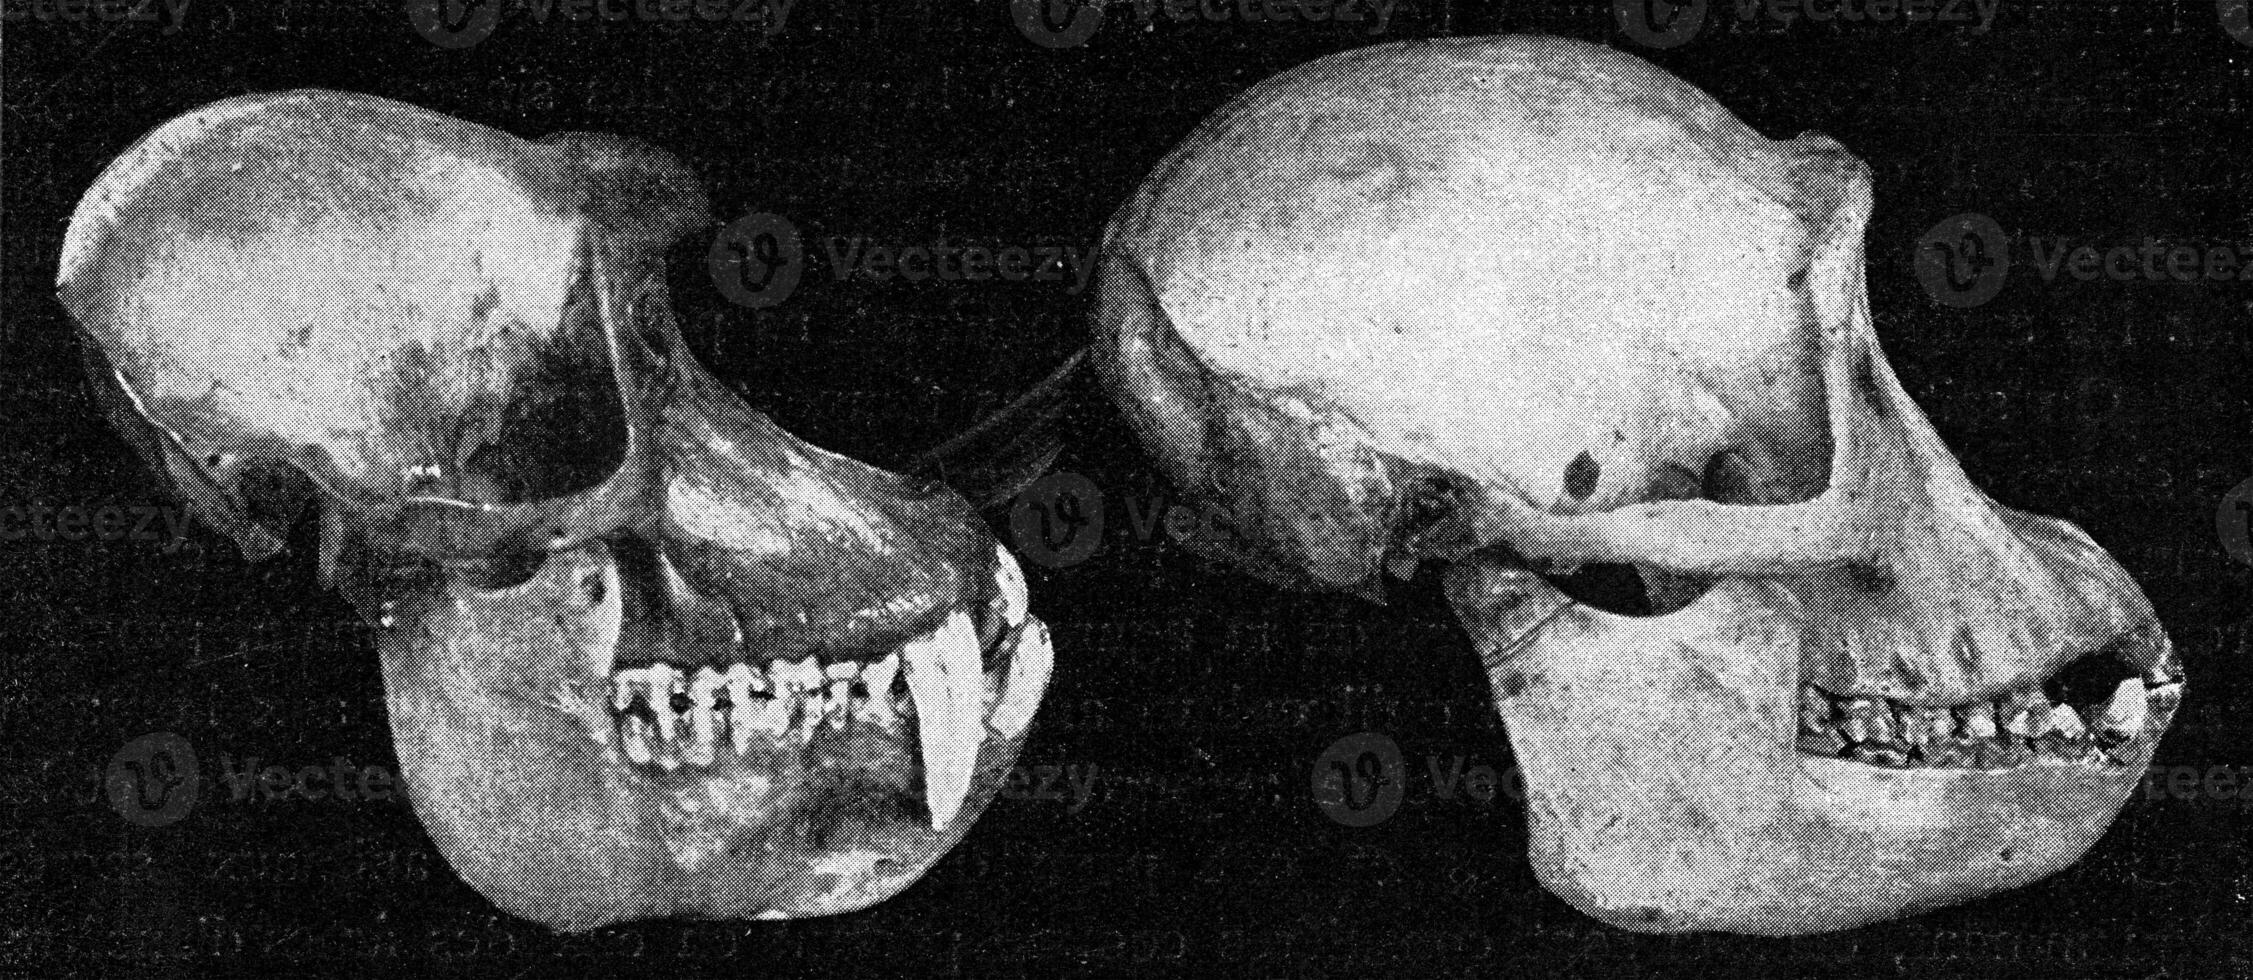 crânios do papião e uma chimpanzé, vintage gravação. foto